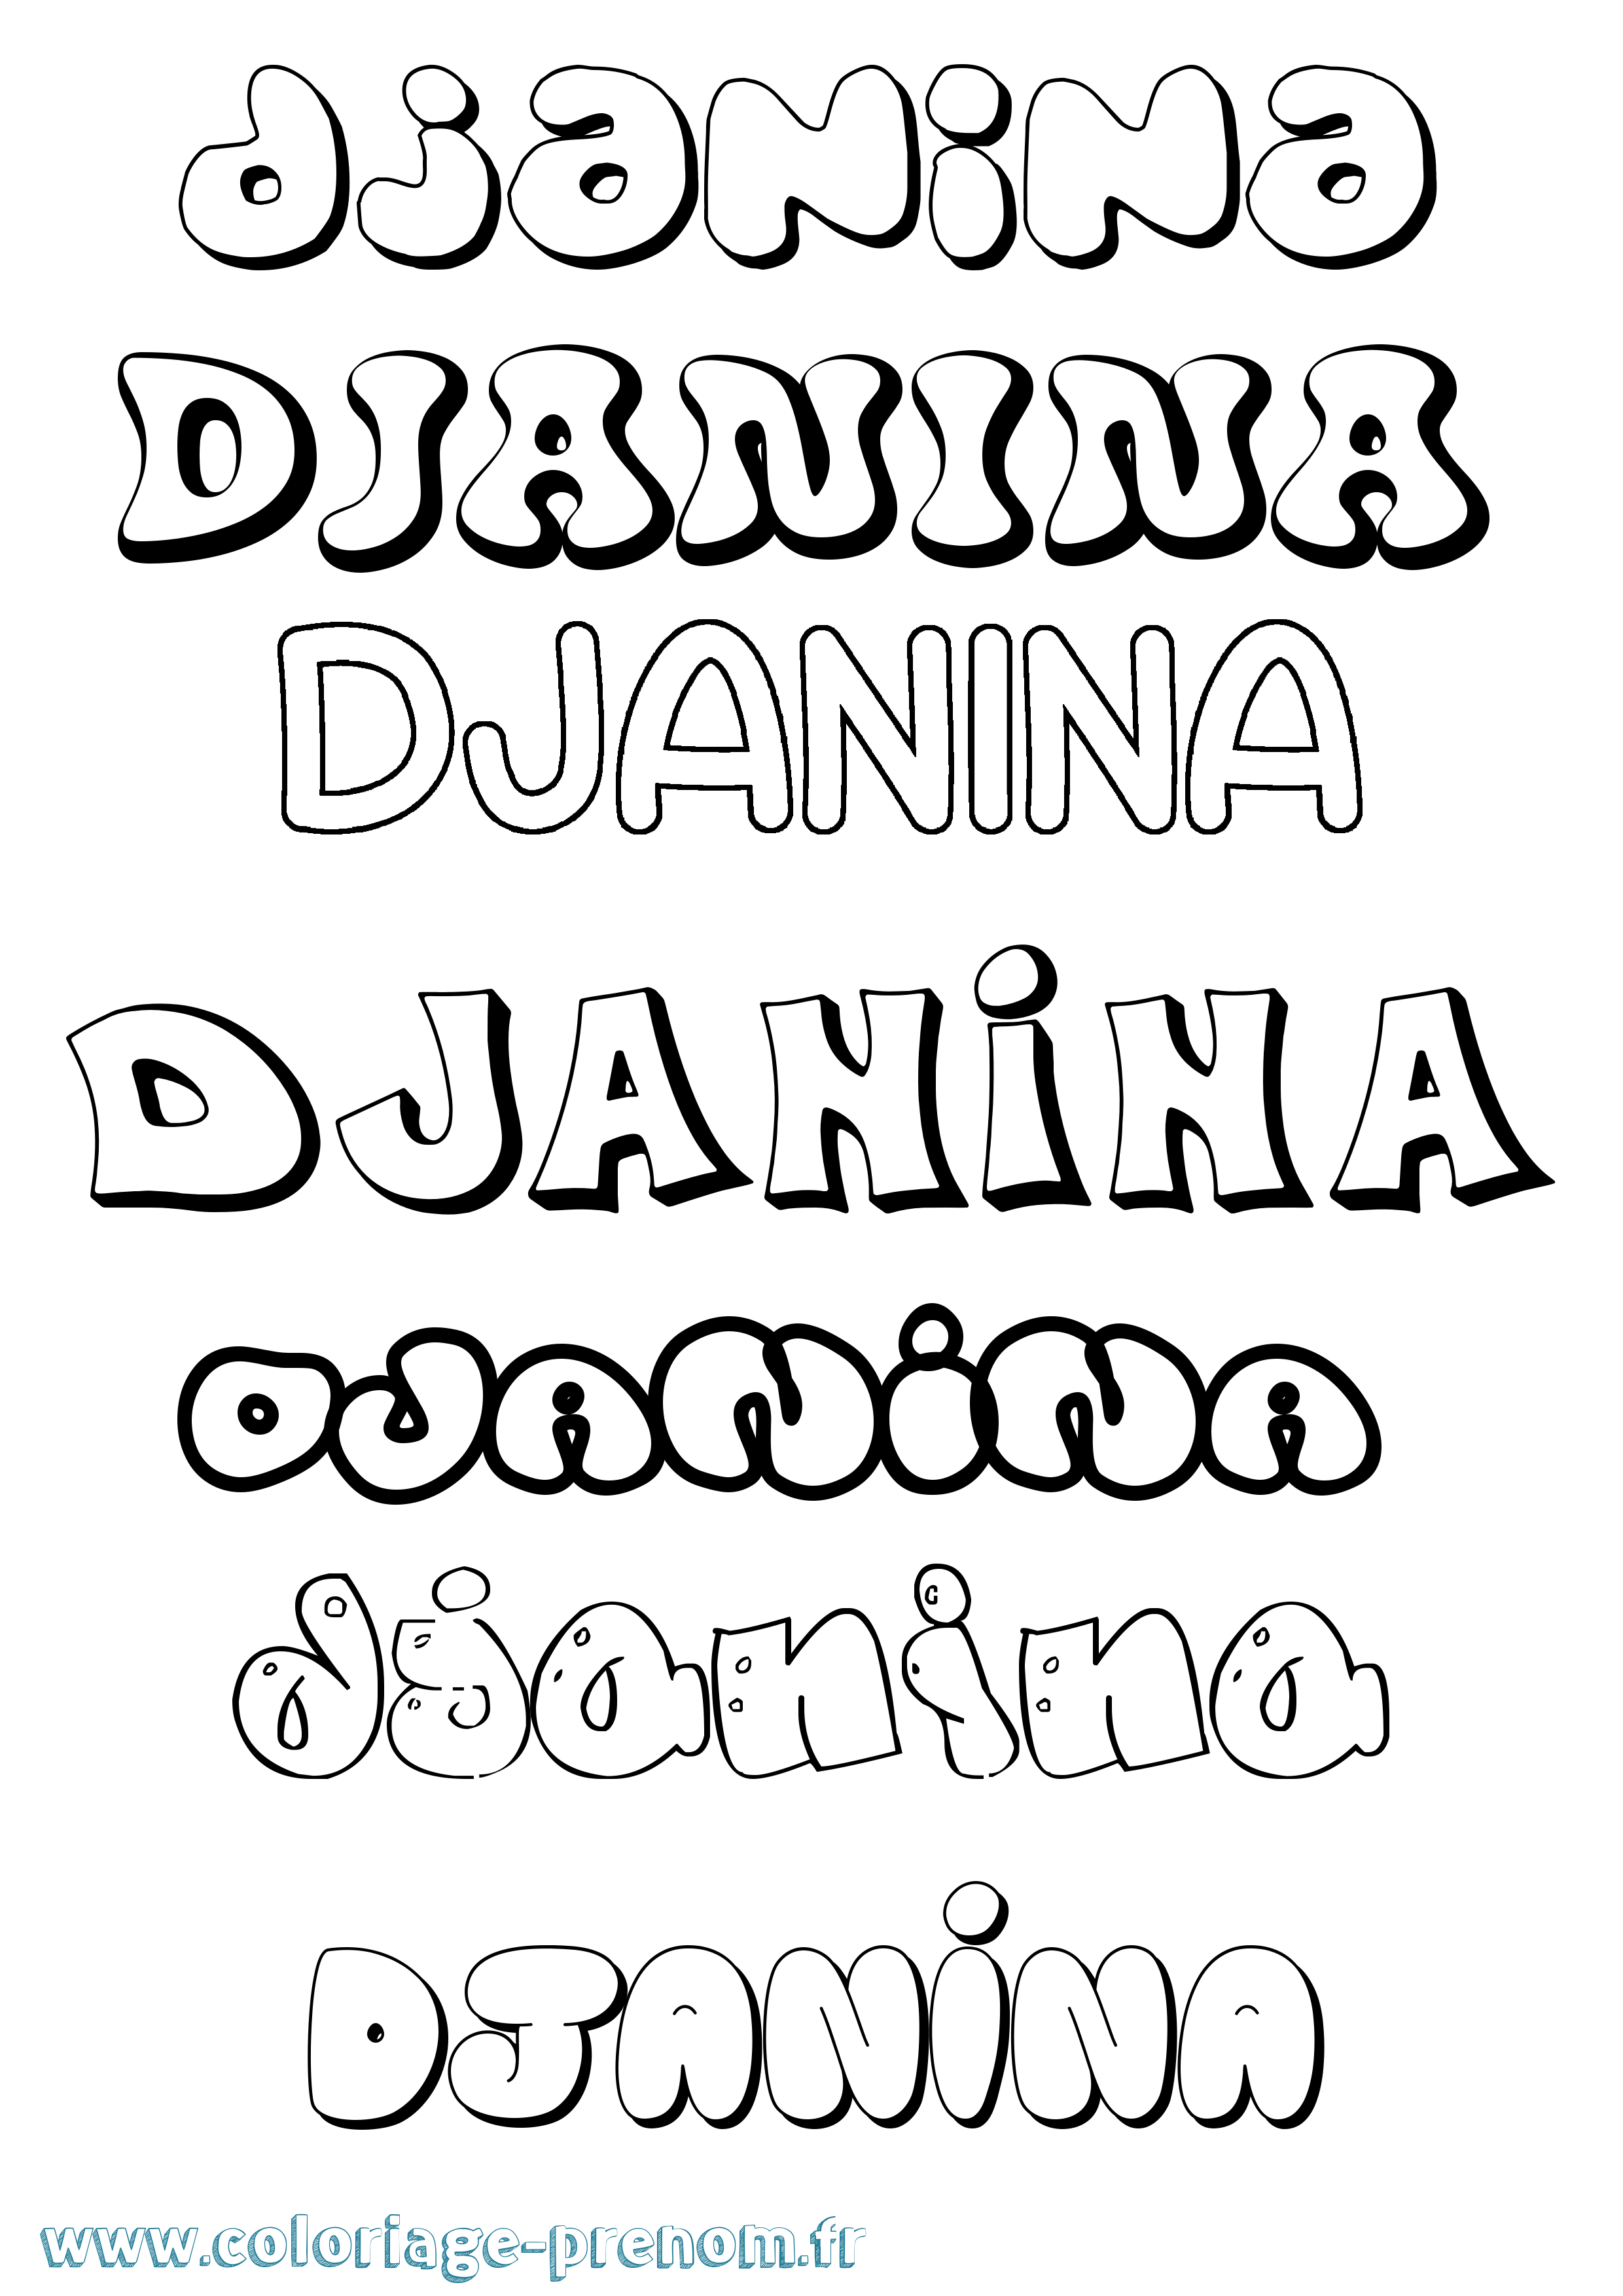 Coloriage prénom Djanina Bubble